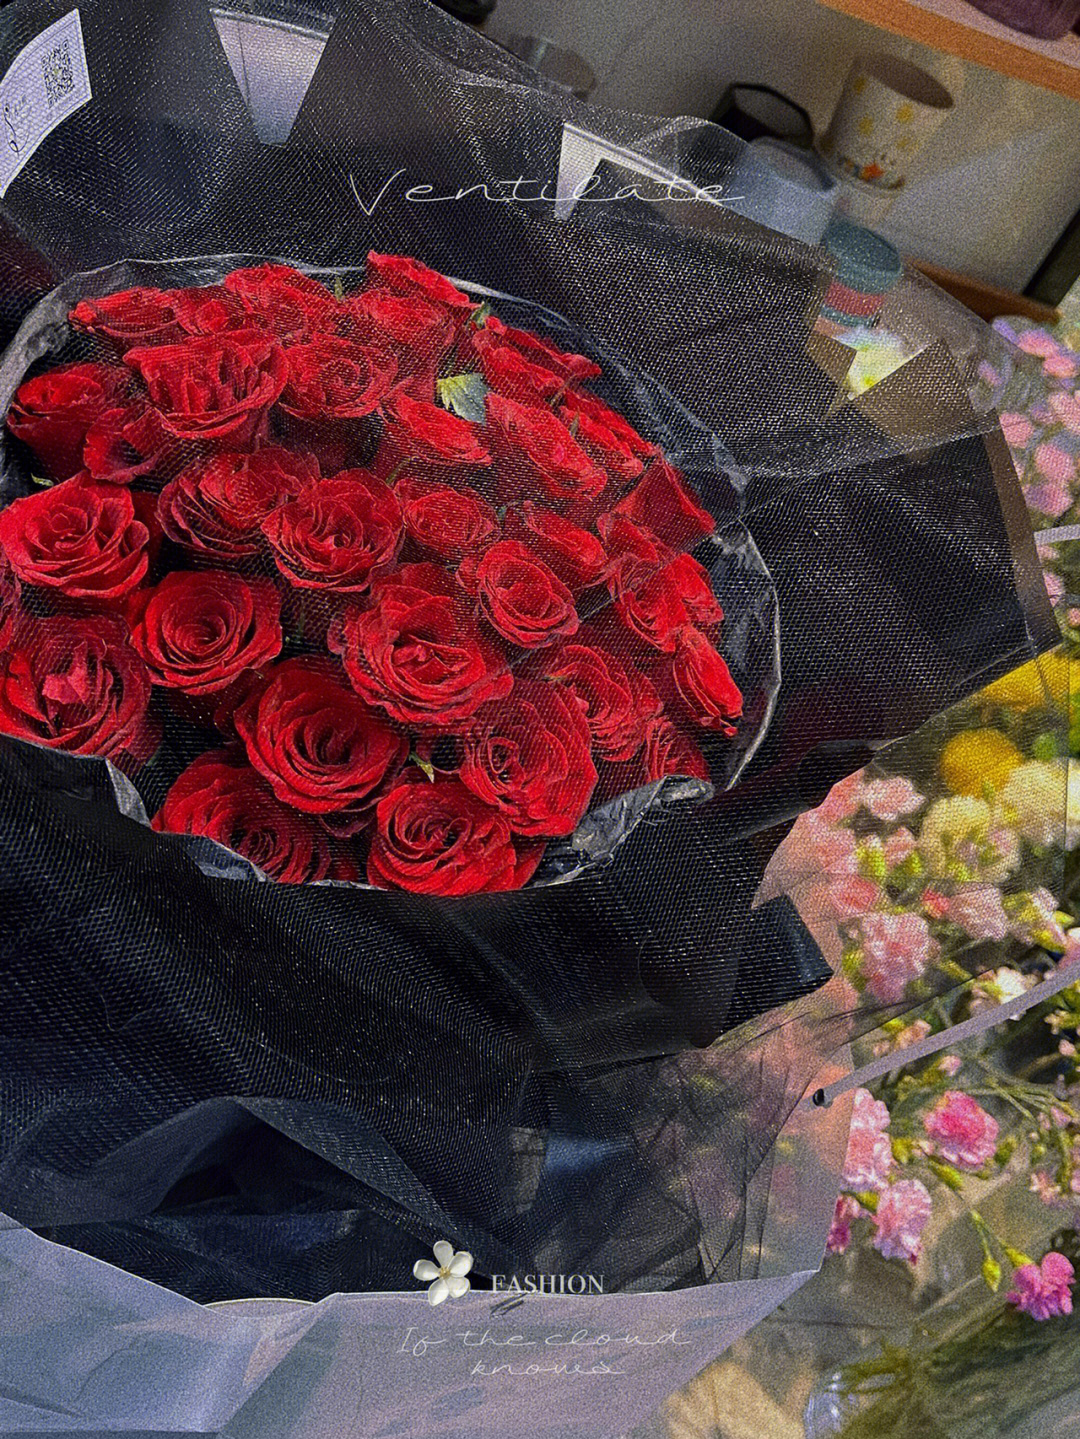 33朵玫瑰黑纱包装图解图片